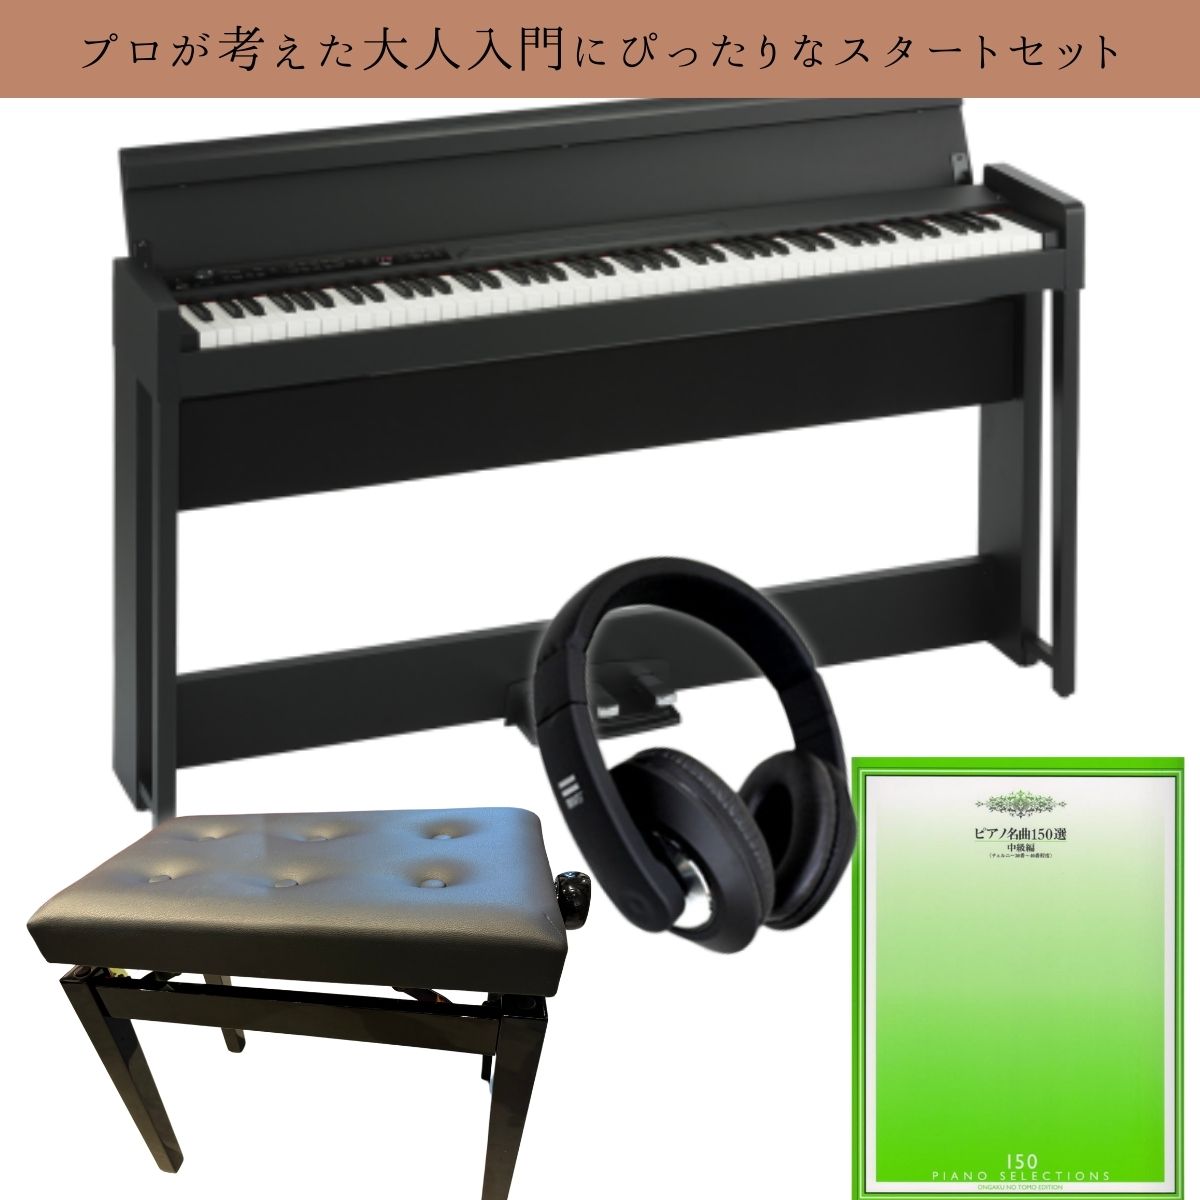 10万円以内で始める！プロが認める電子ピアノ超おすすめスタートセット